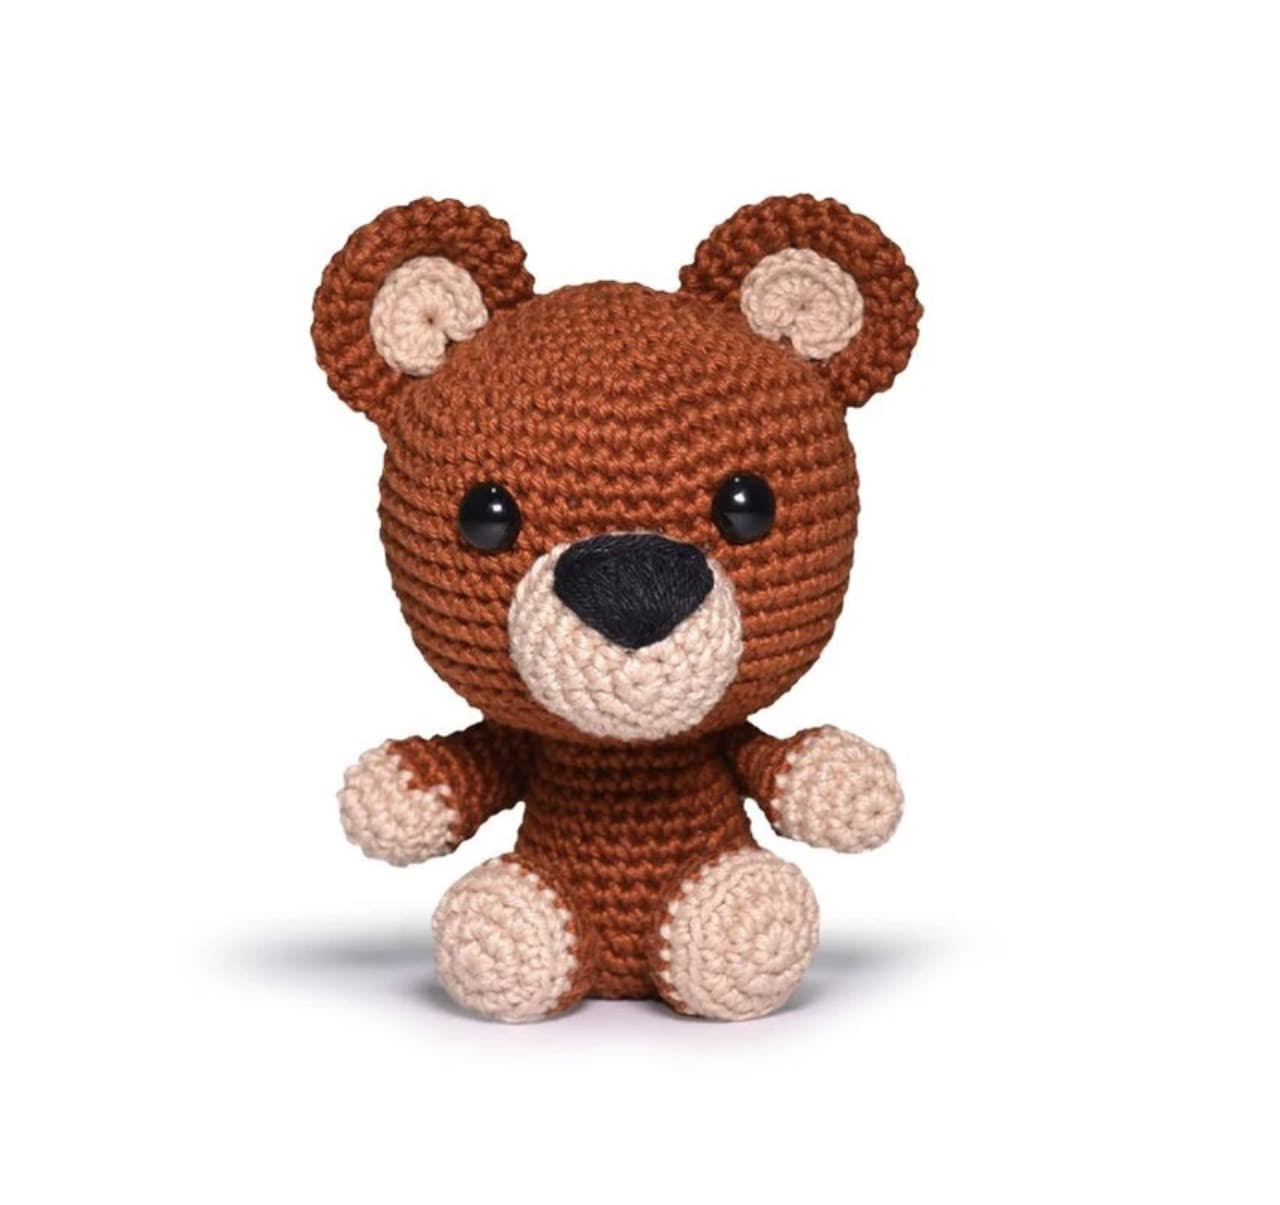 Circulo Safari Amigurumi Crochet Kit - Bear